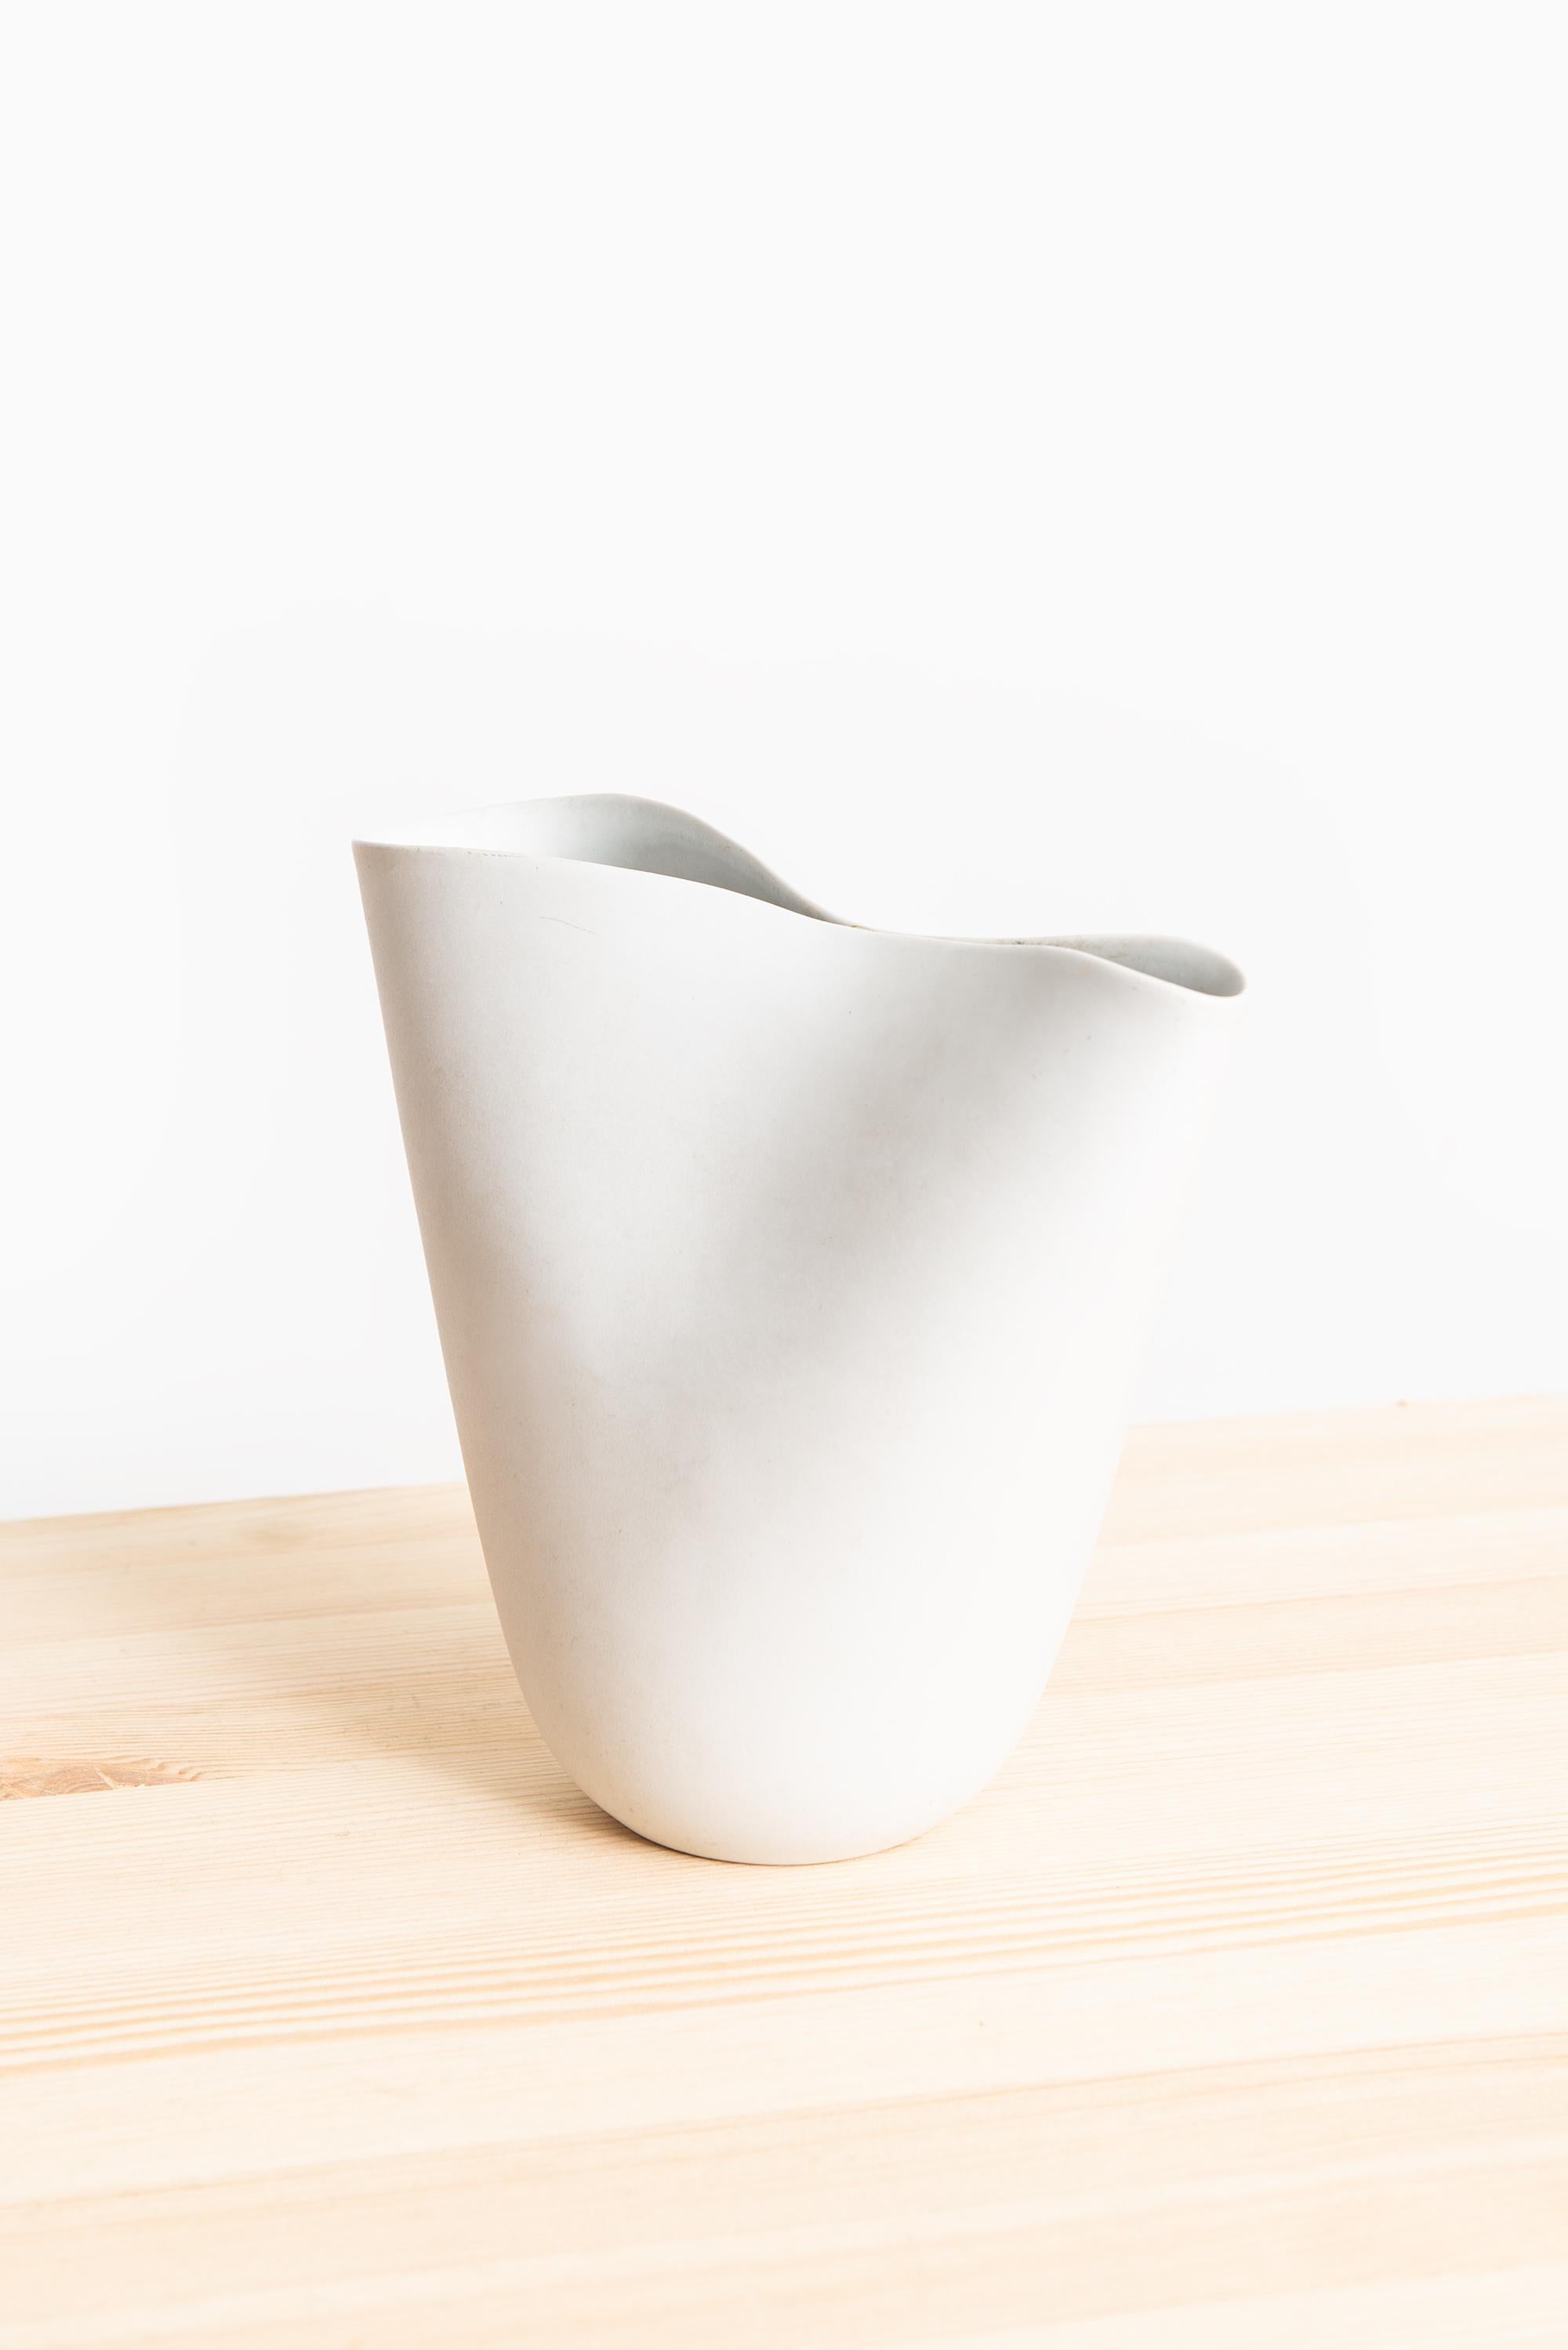 Grand vase en céramique modèle Veckla conçu par Stig Lindberg. Produit par Gustavsberg en Suède.